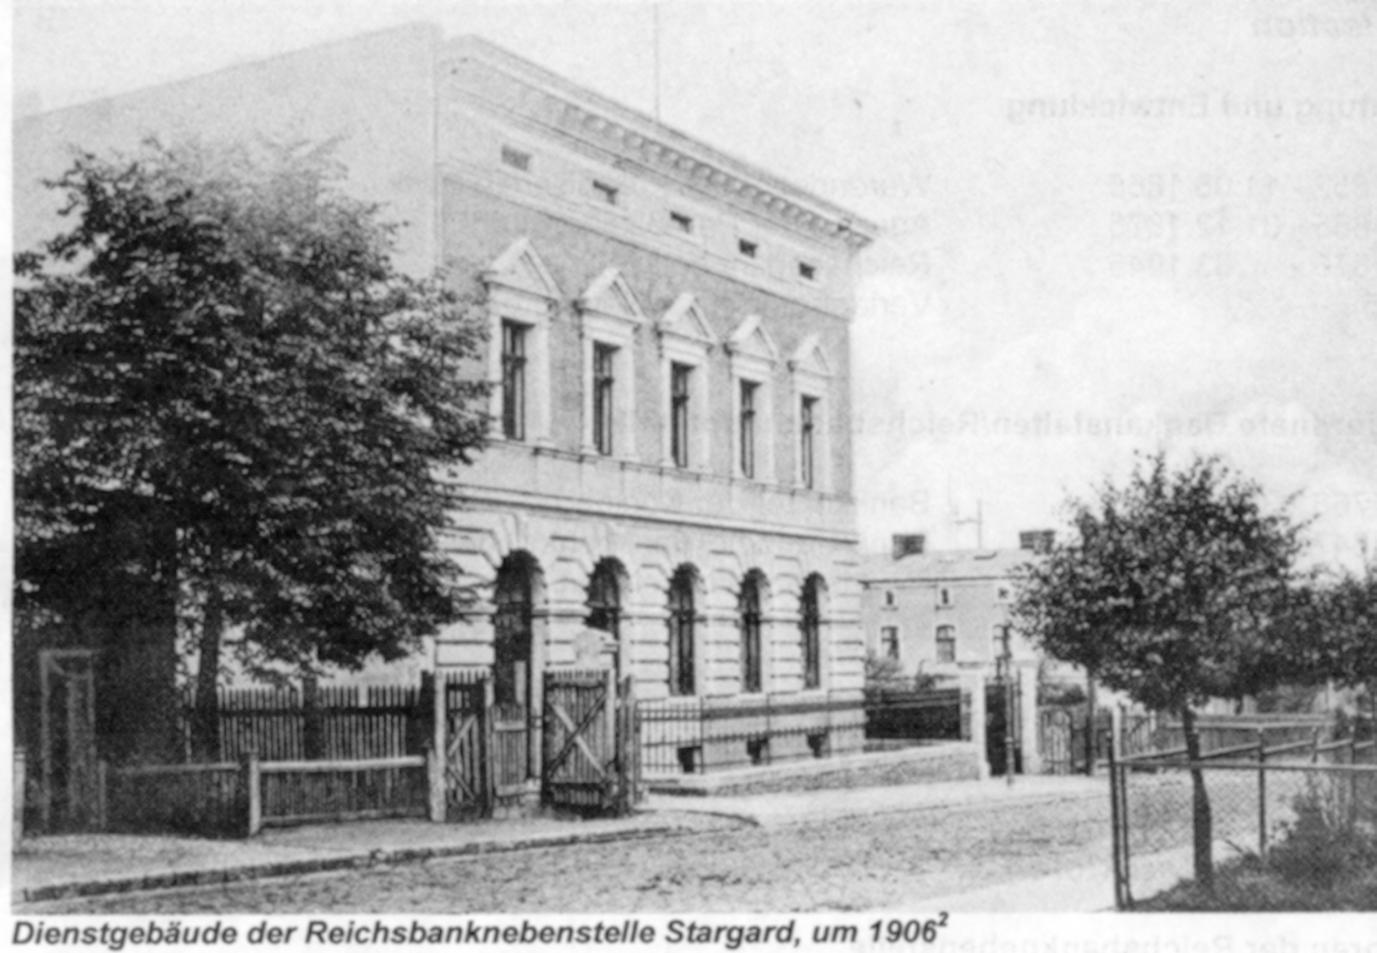 Reichsbanknebenstelle 1906 in Stargard